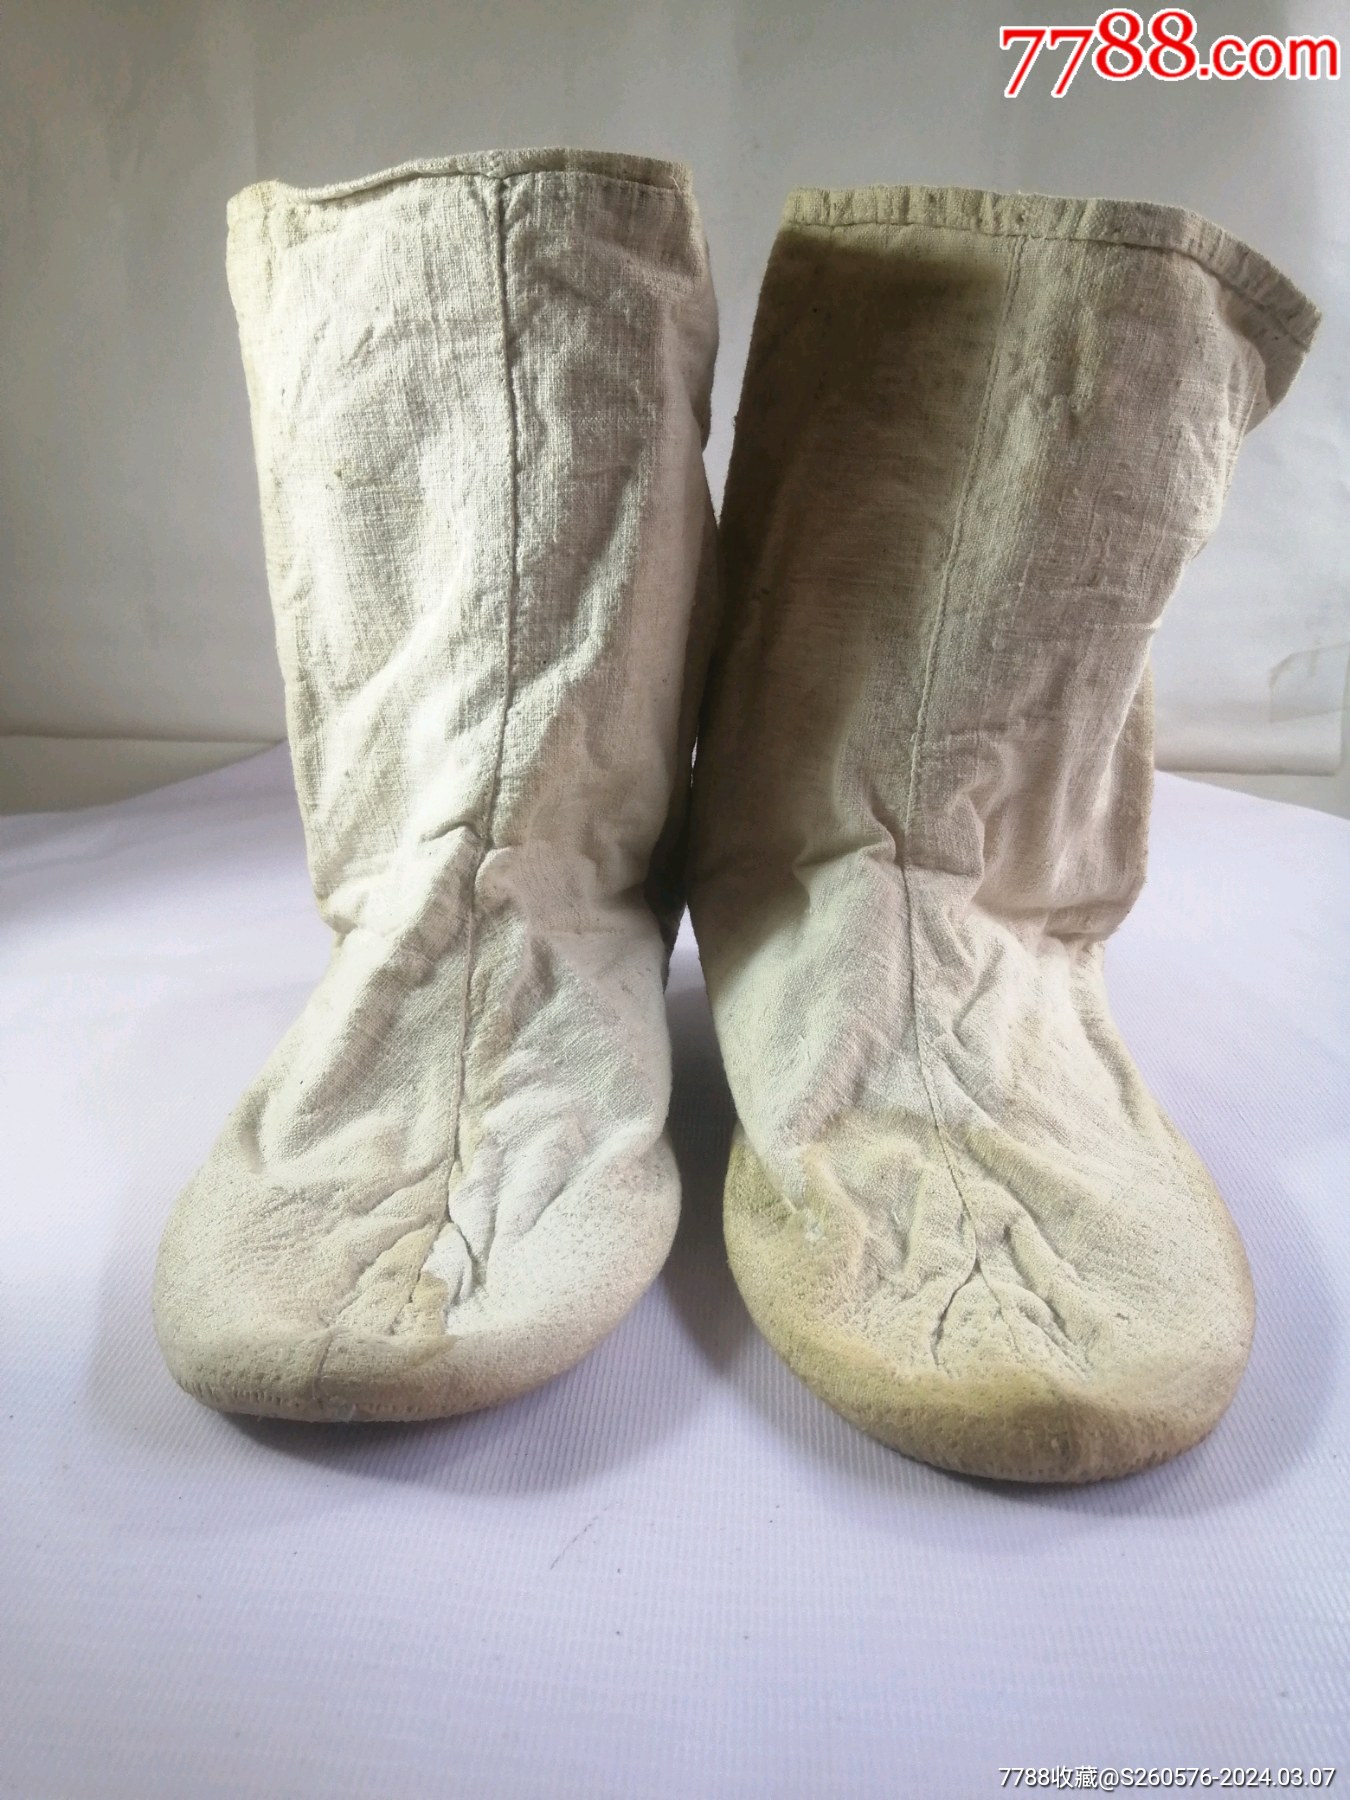 抗日战争时期,八路军穿过的粗布袜子